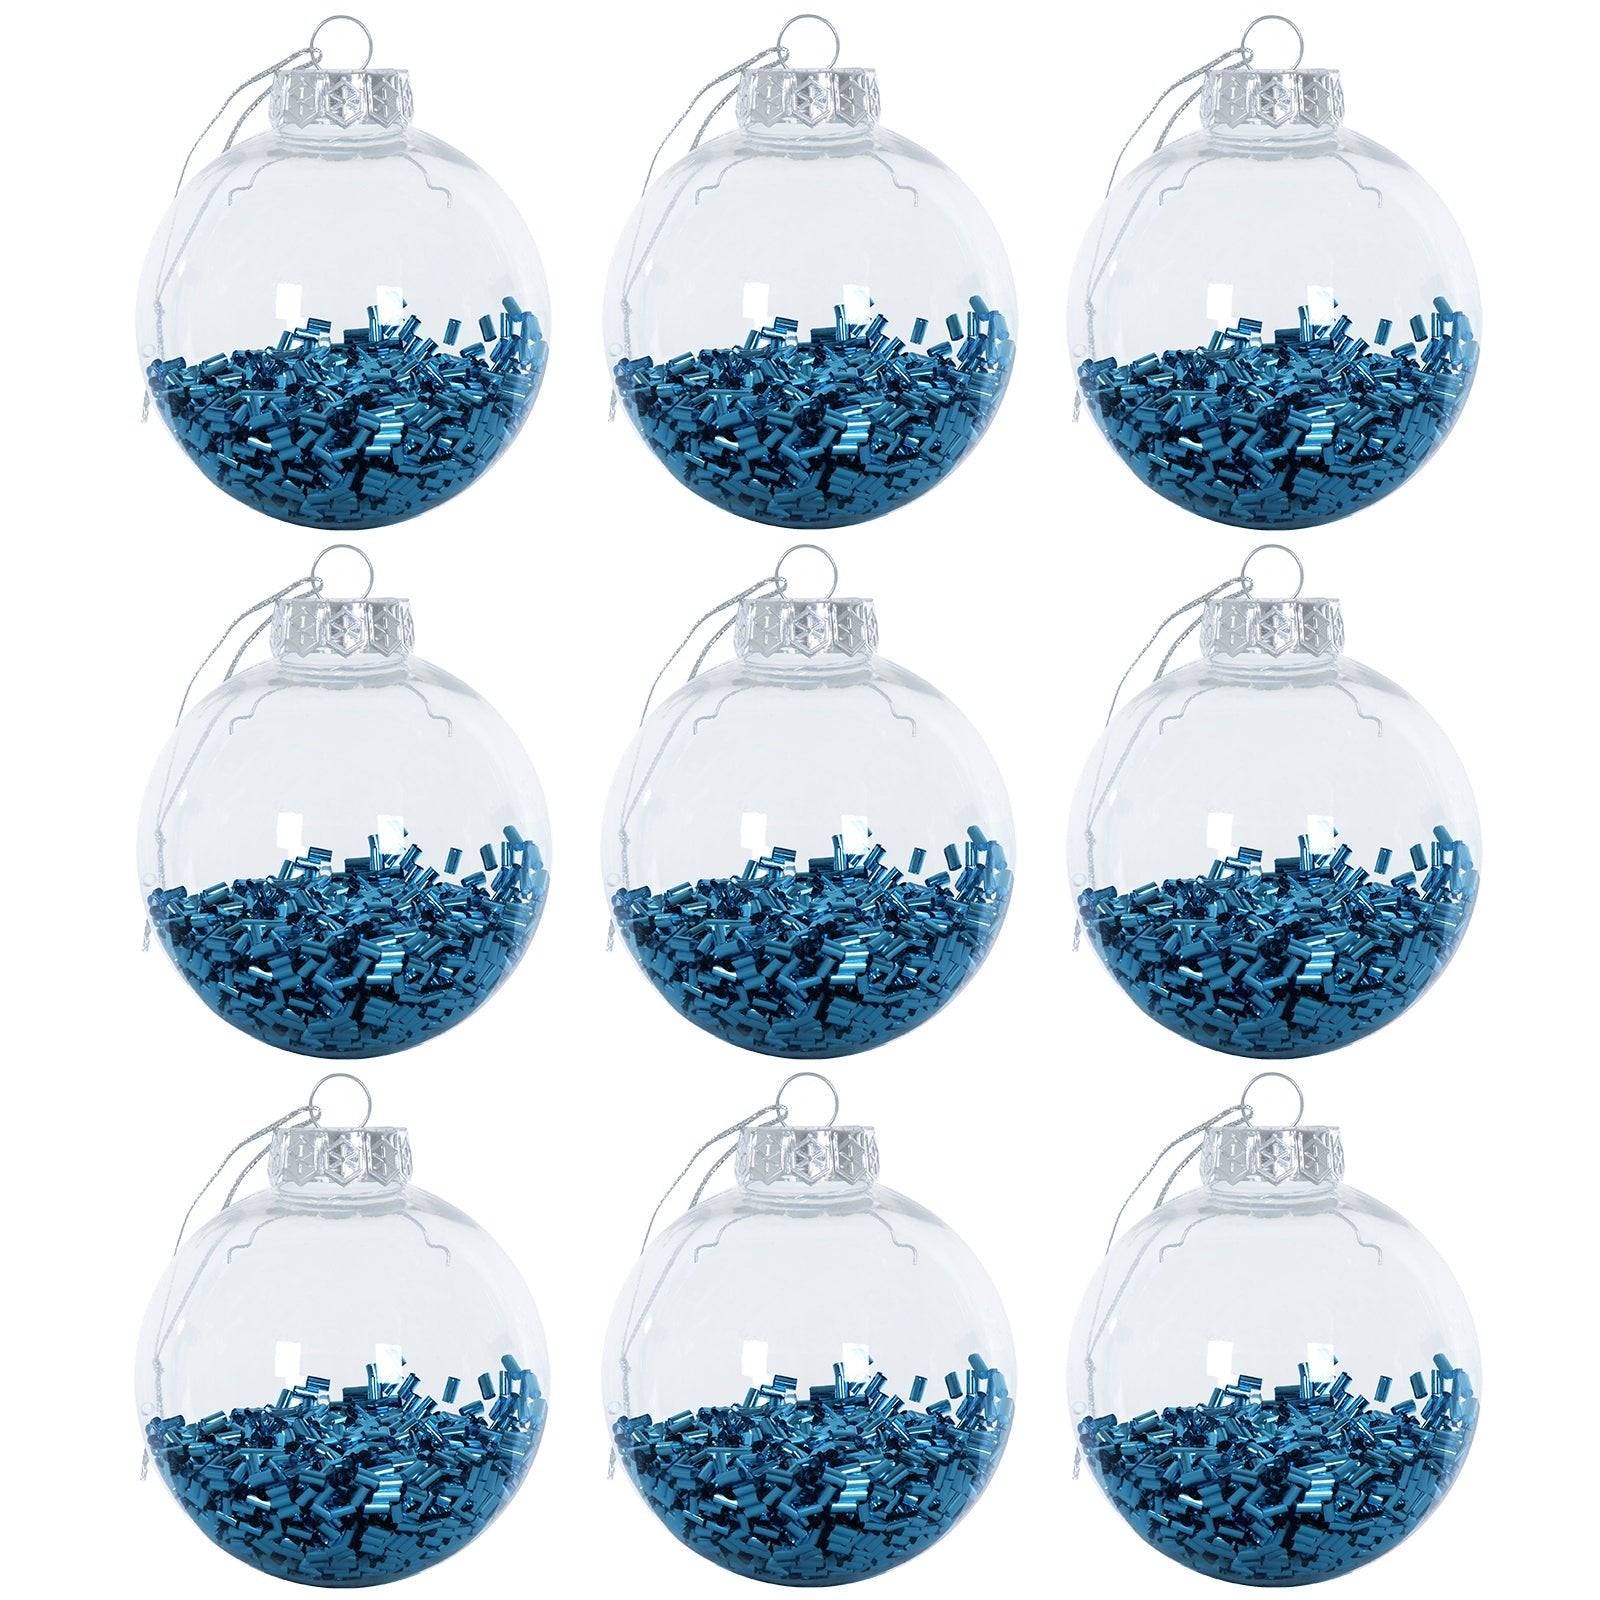 Mr Crimbo 9 x 8cm Foil Filled Shaker Christmas Tree Baubles - MrCrimbo.co.uk -XS6469 - Deep Blue -Baubles